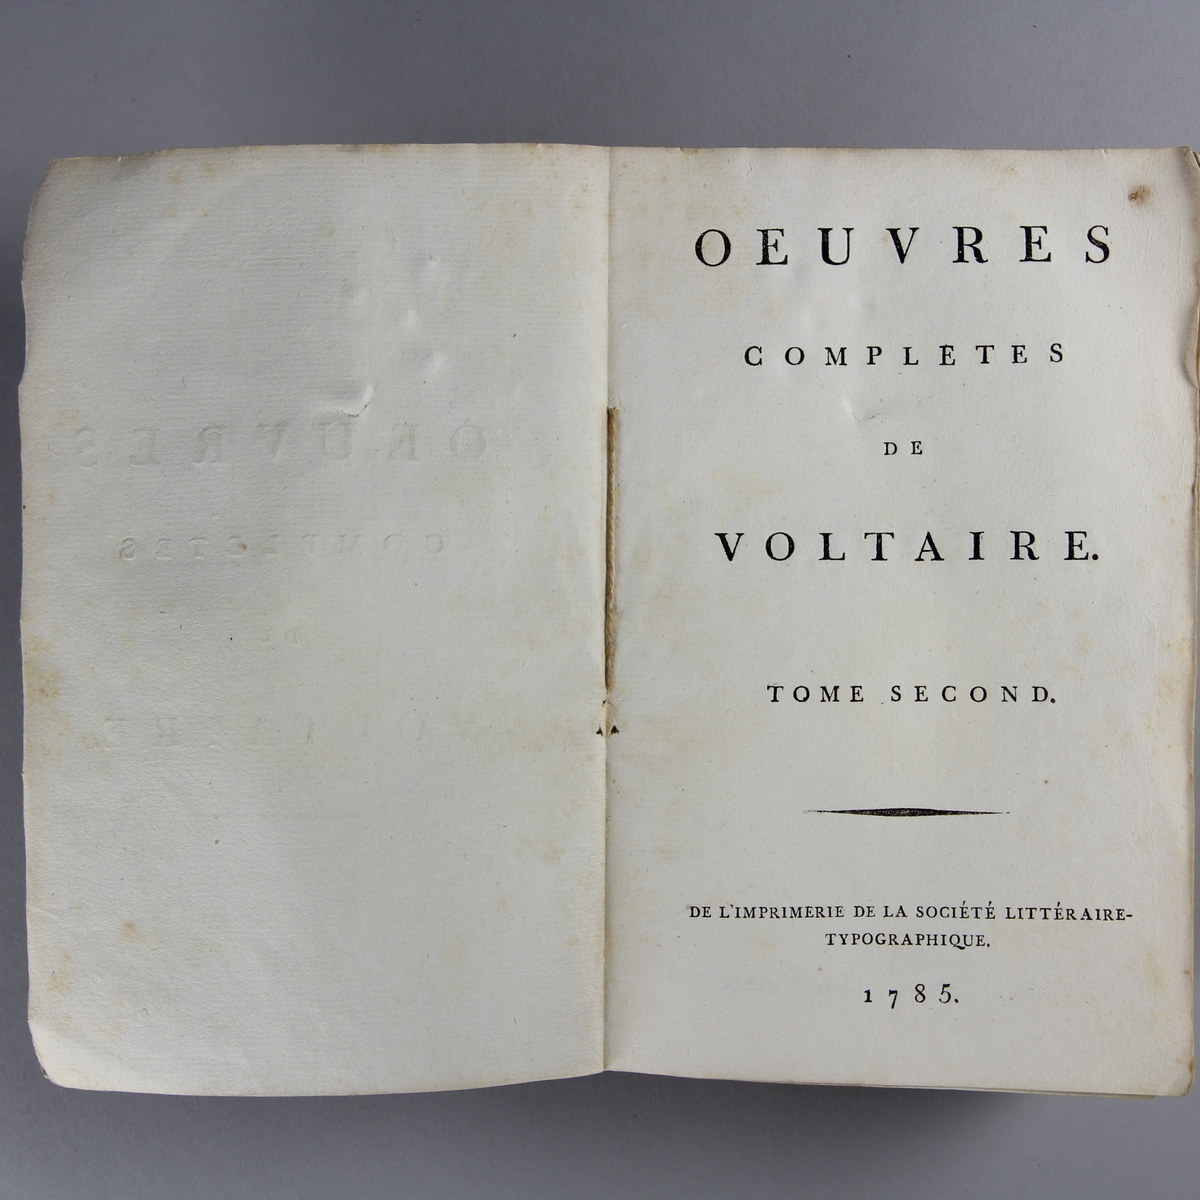 Bok, häftad, "Oeuvres complètes de Voltaire." del 2, tryckt 1785.
Pärm av gråblått papper, skurna snitt. På ryggen pappersetikett med tryckt text med volymens namn och nummer. Ryggen blekt.